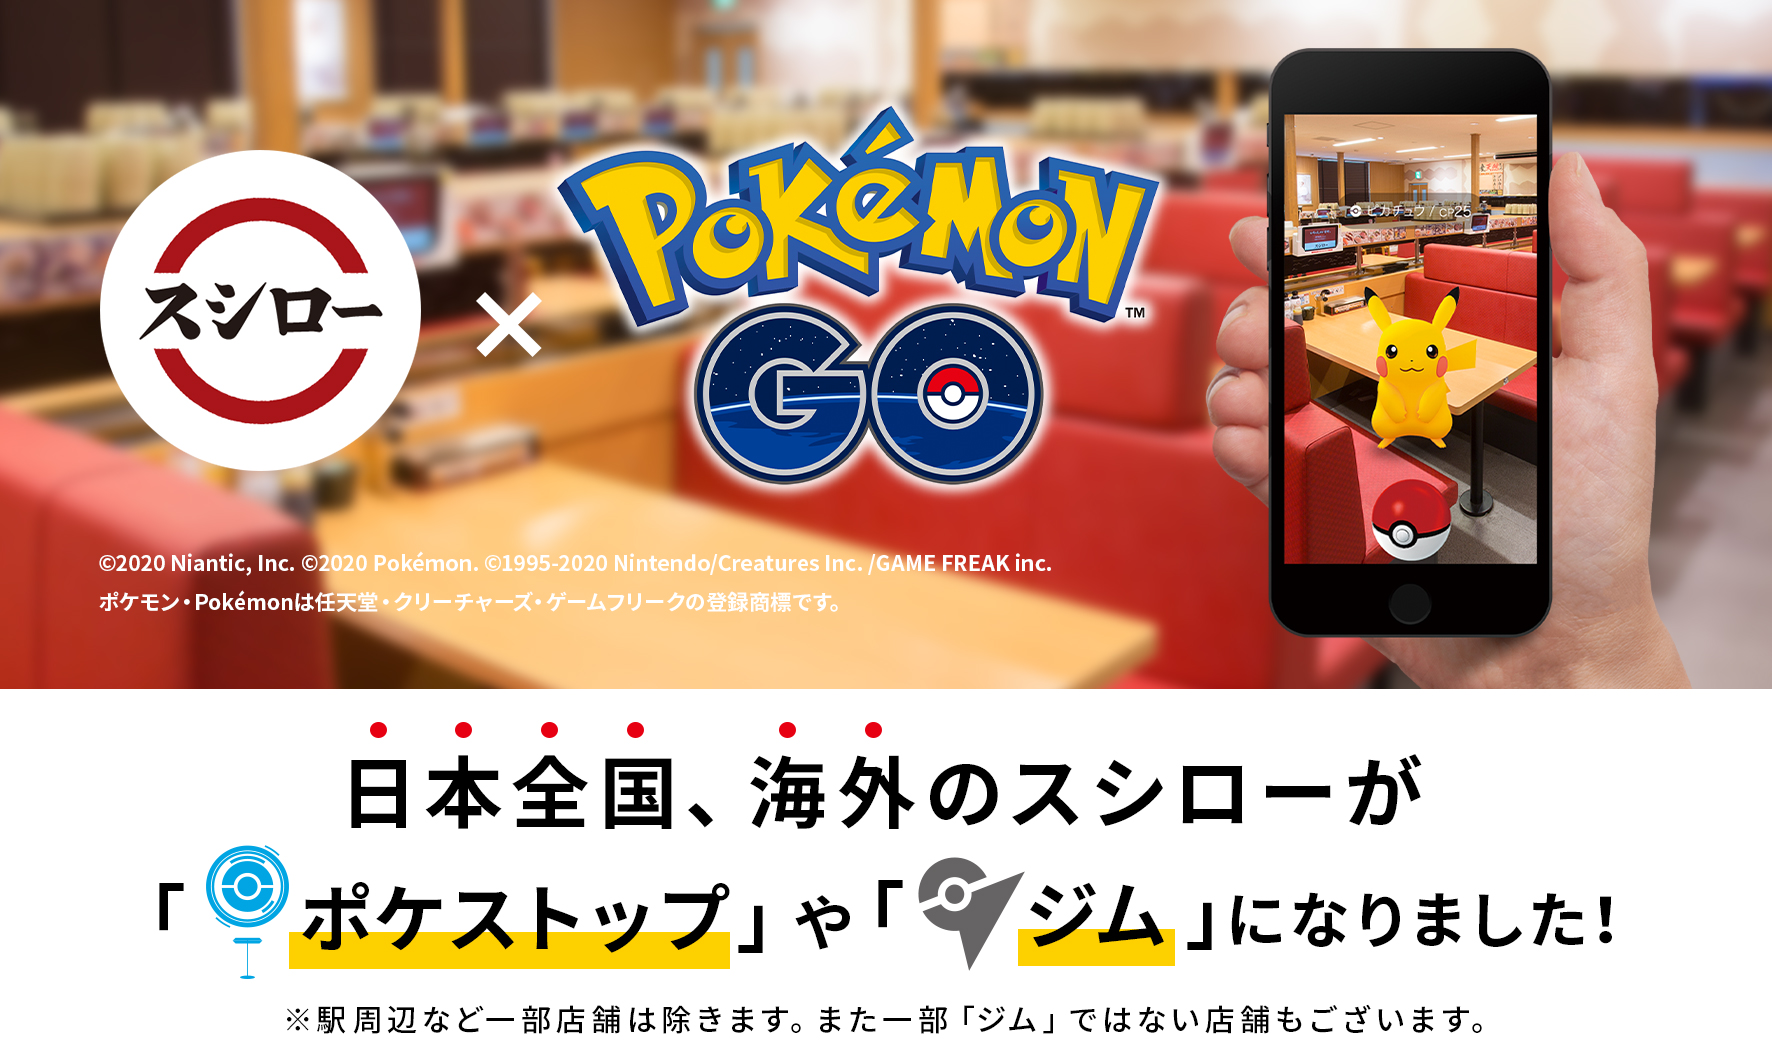 スシローが Pokemon Go のオフィシャルパートナーに スシロー Pokemon Go 10月27日 火 より全国のスシロー店舗にて開始 株式会社スシローグローバルホールディングスのプレスリリース